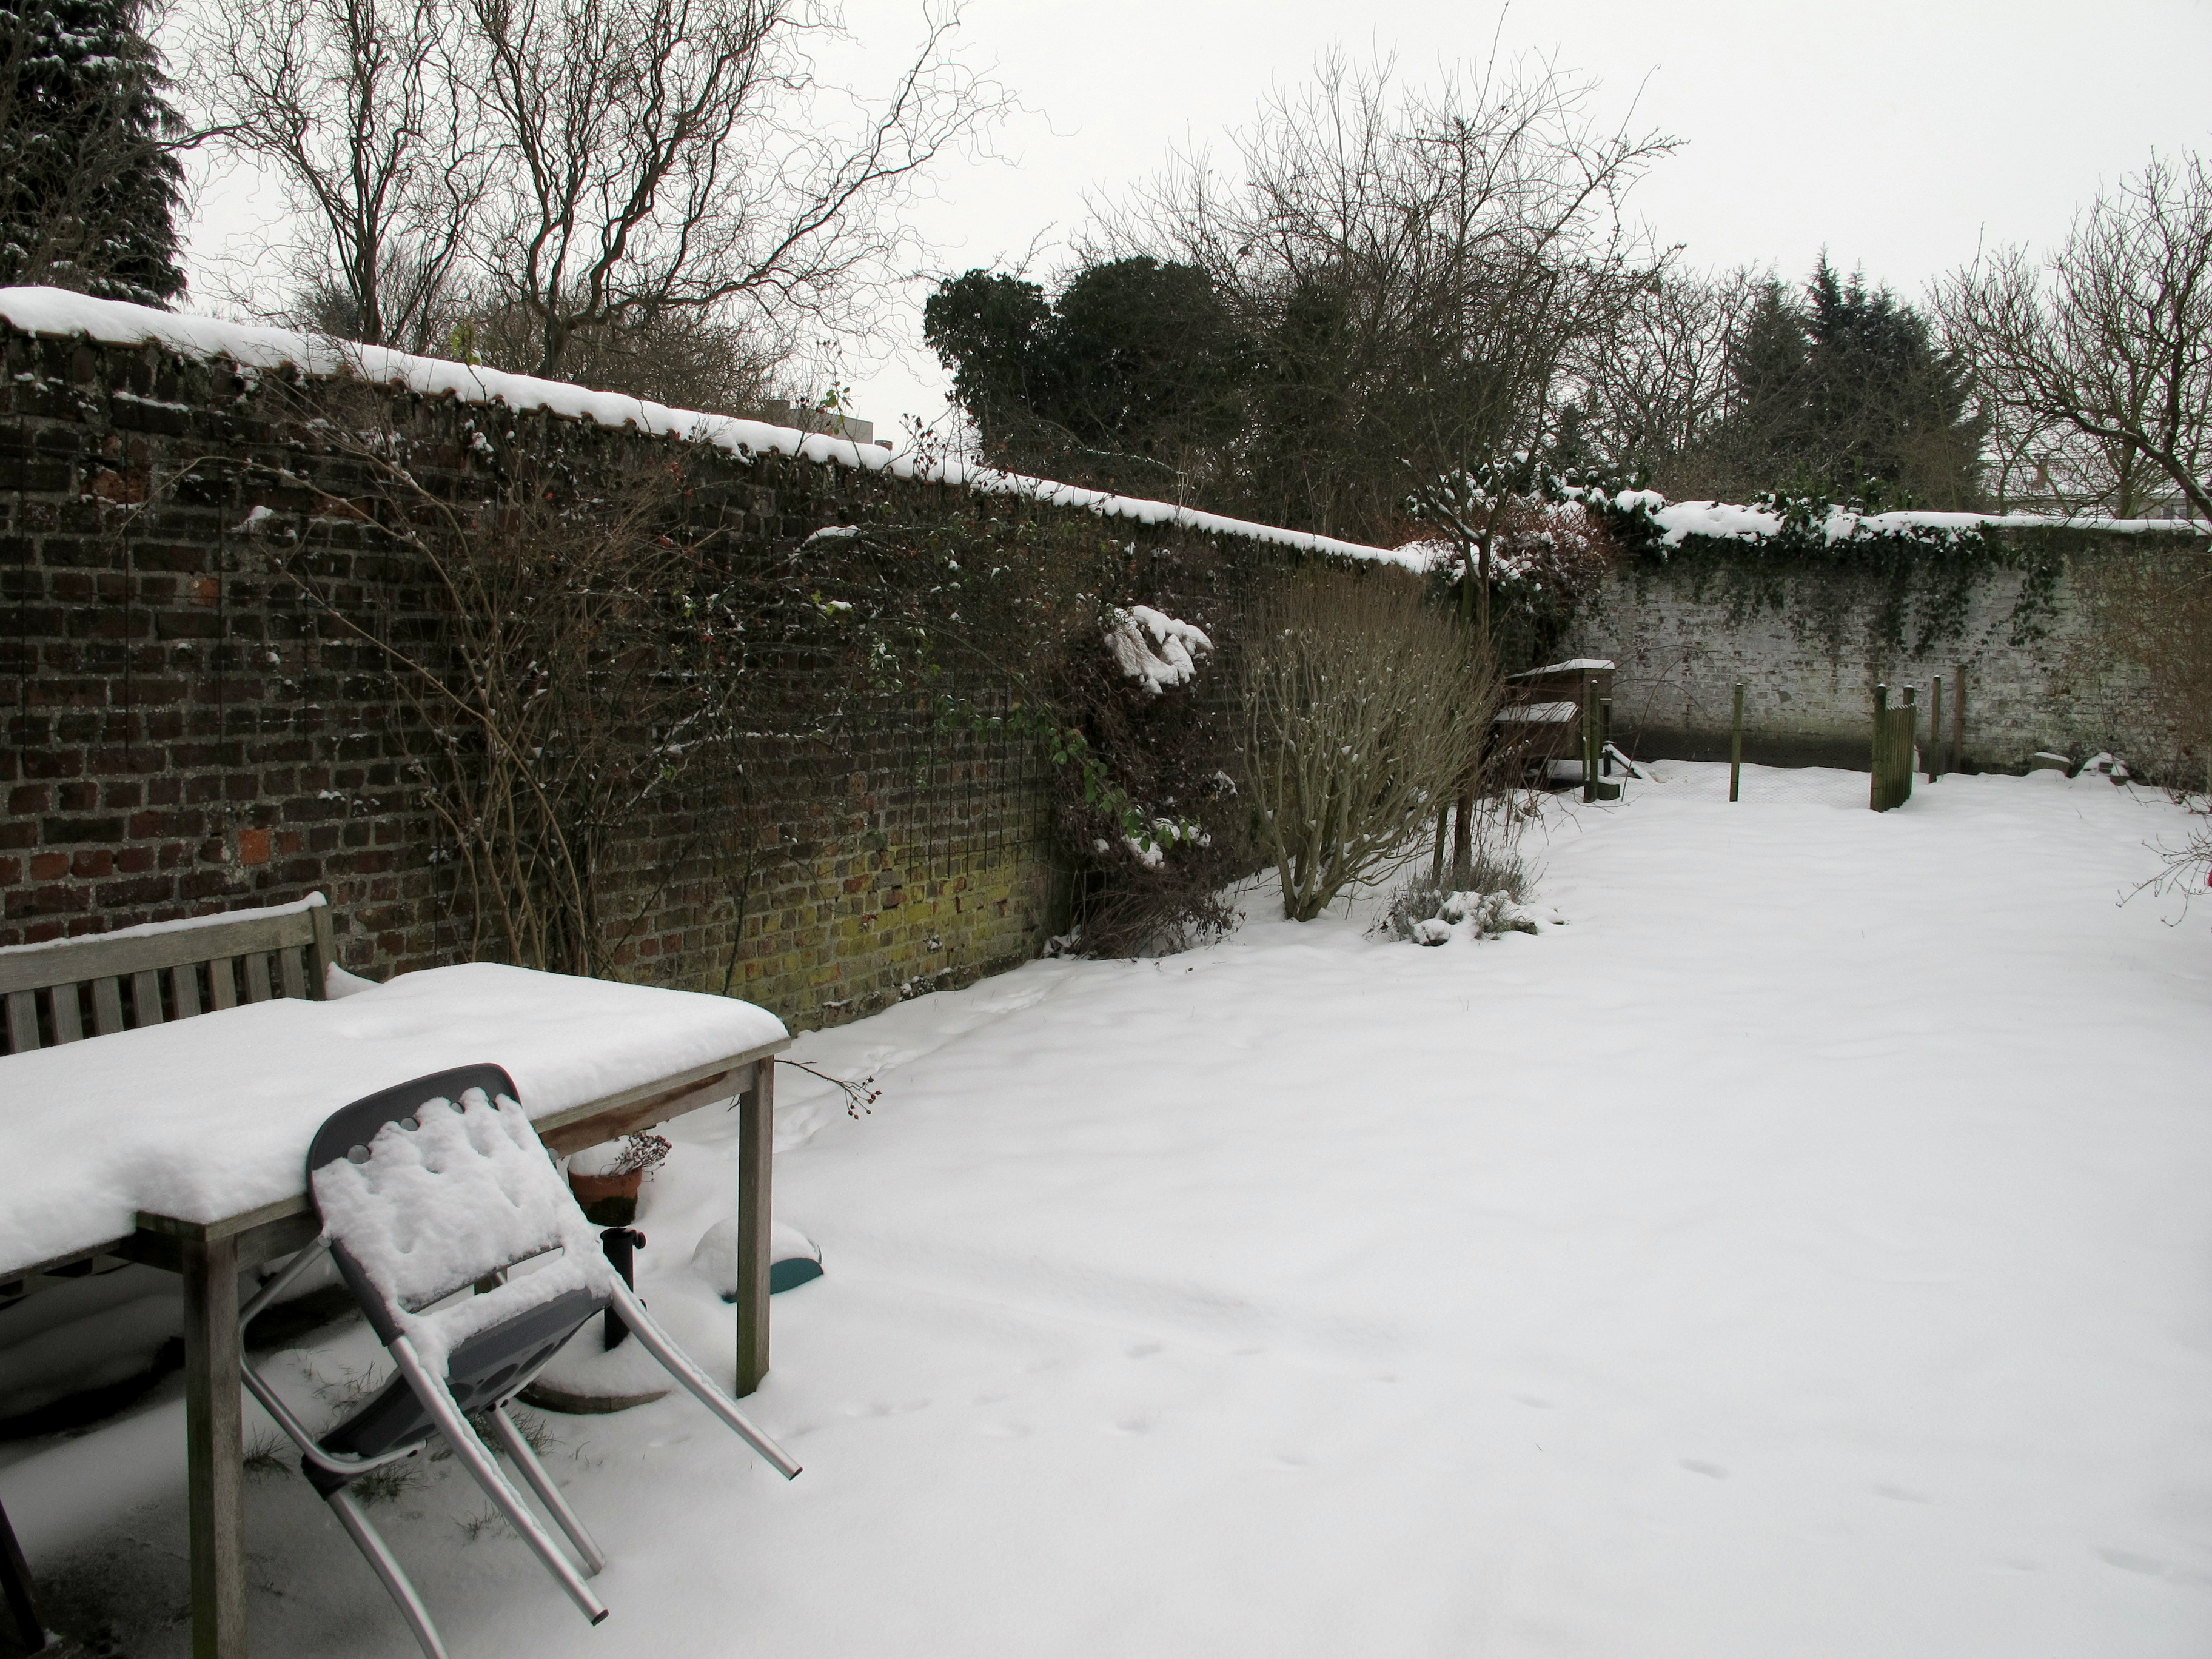 Snow in my garden